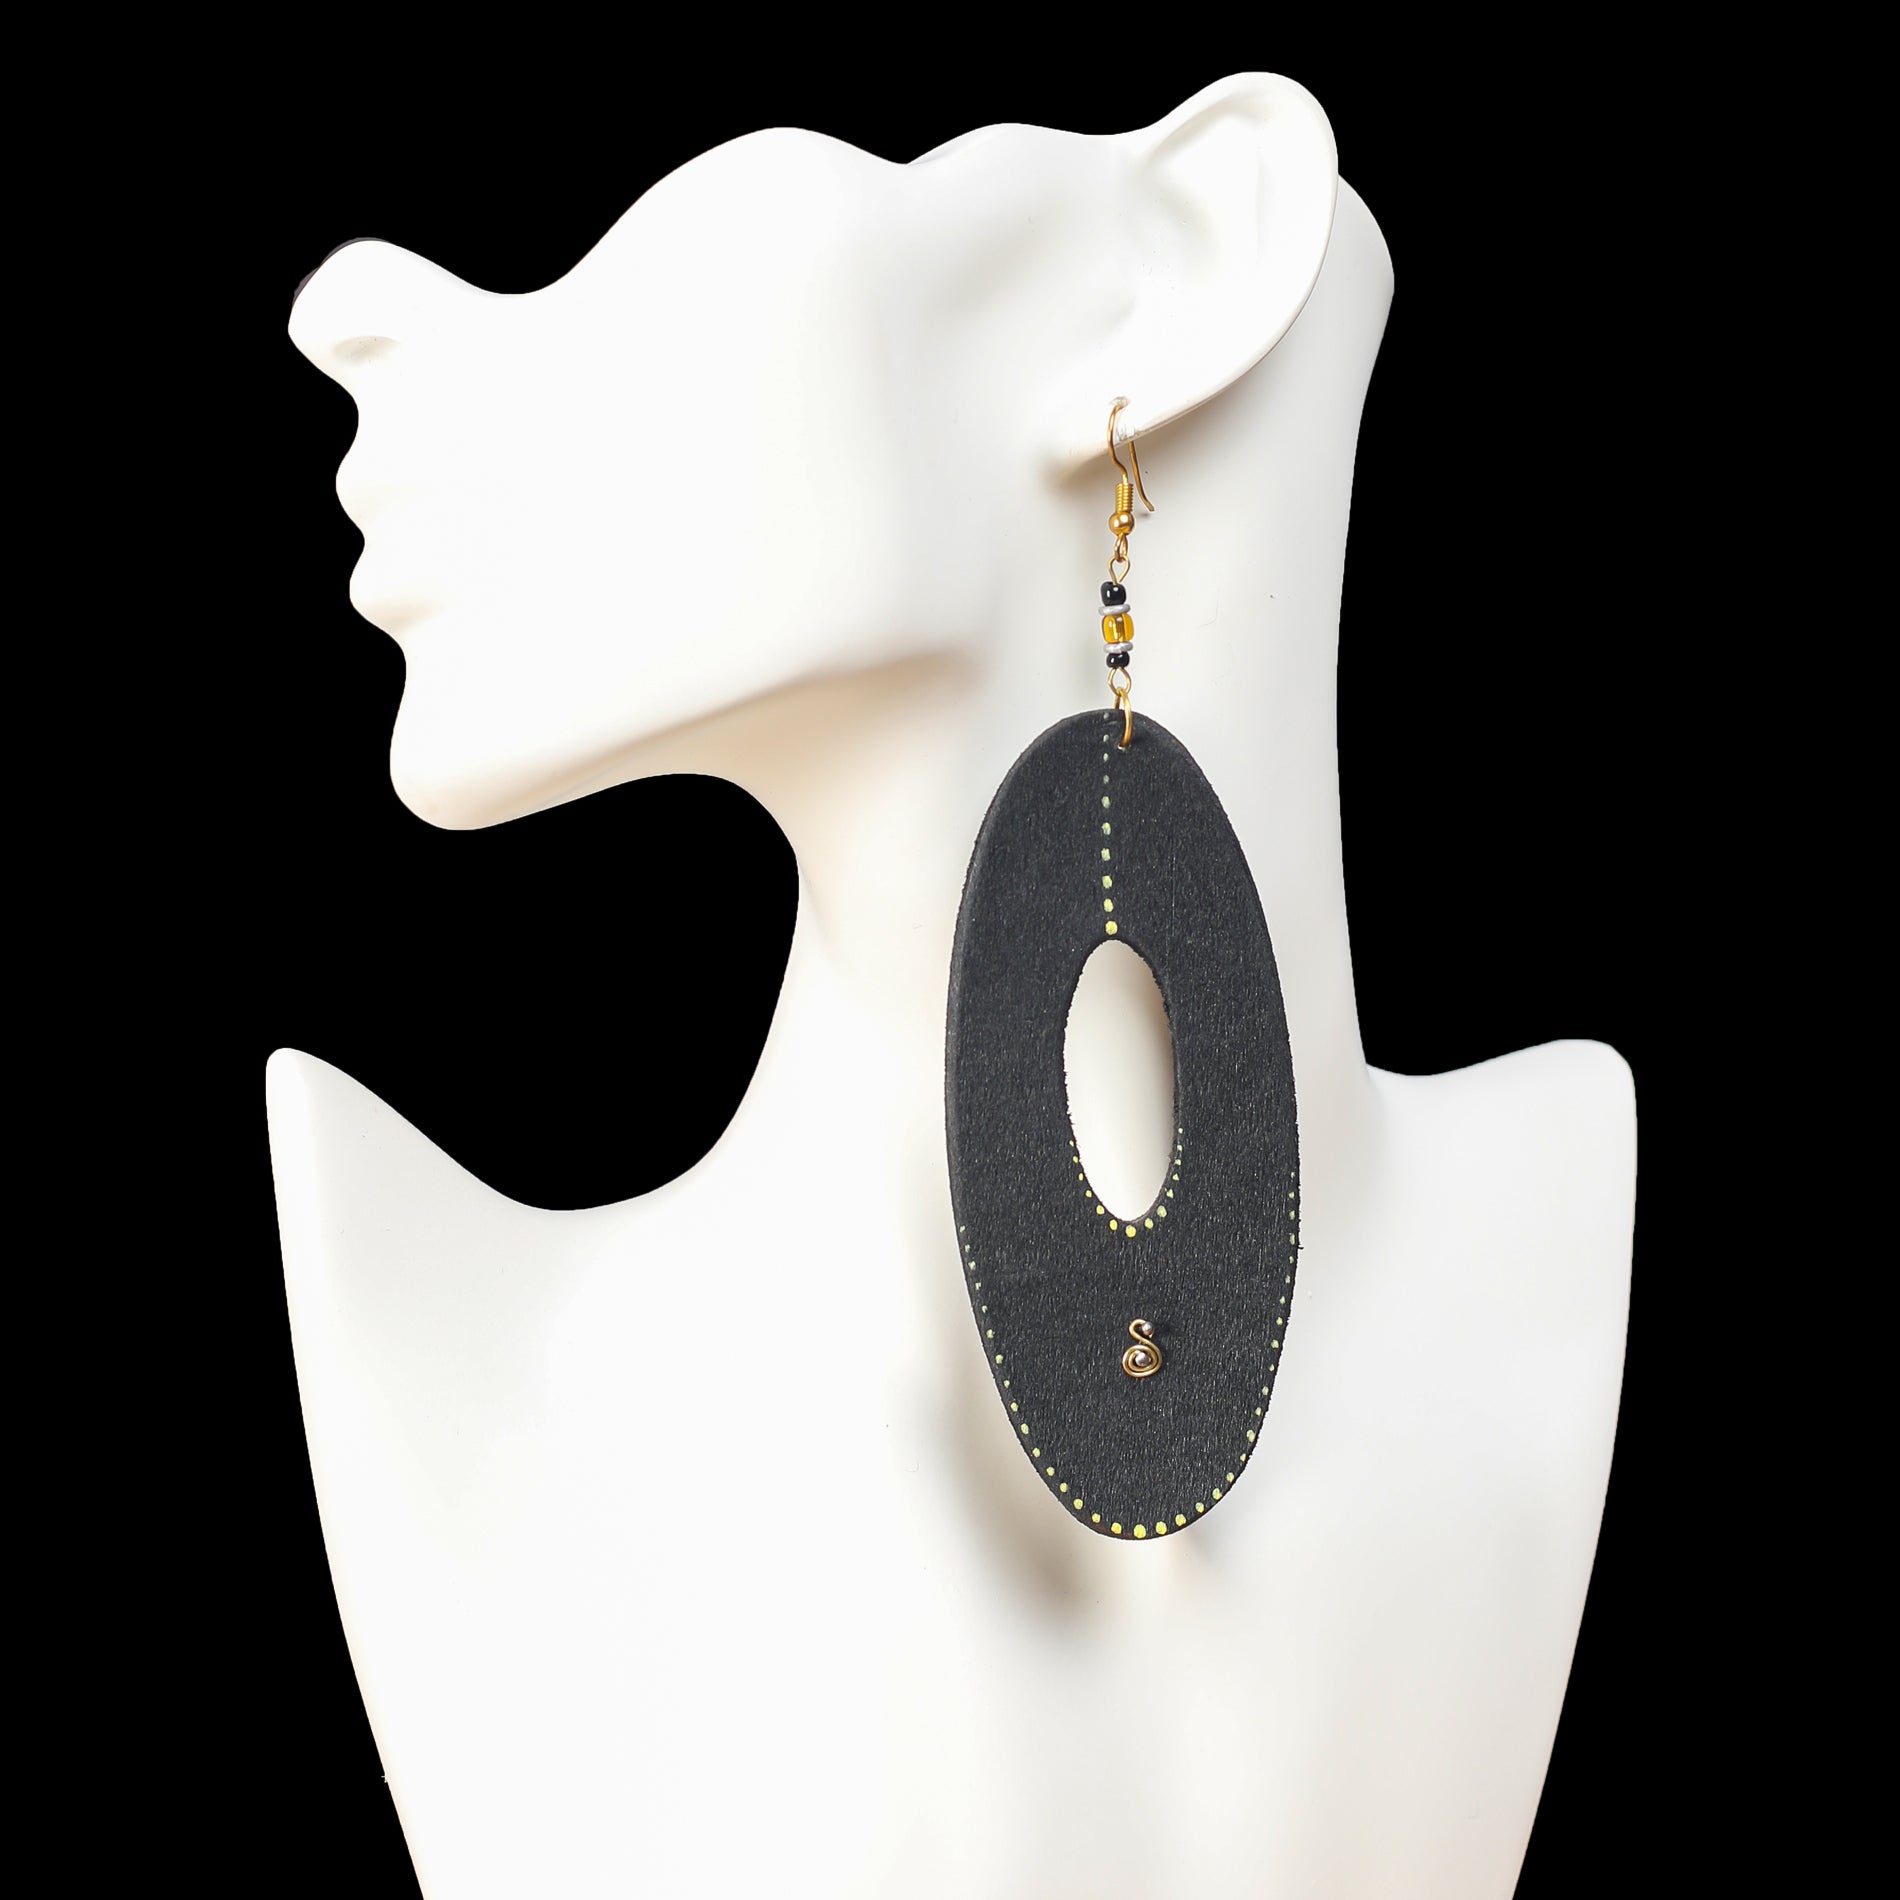 Long Black wooden earrings